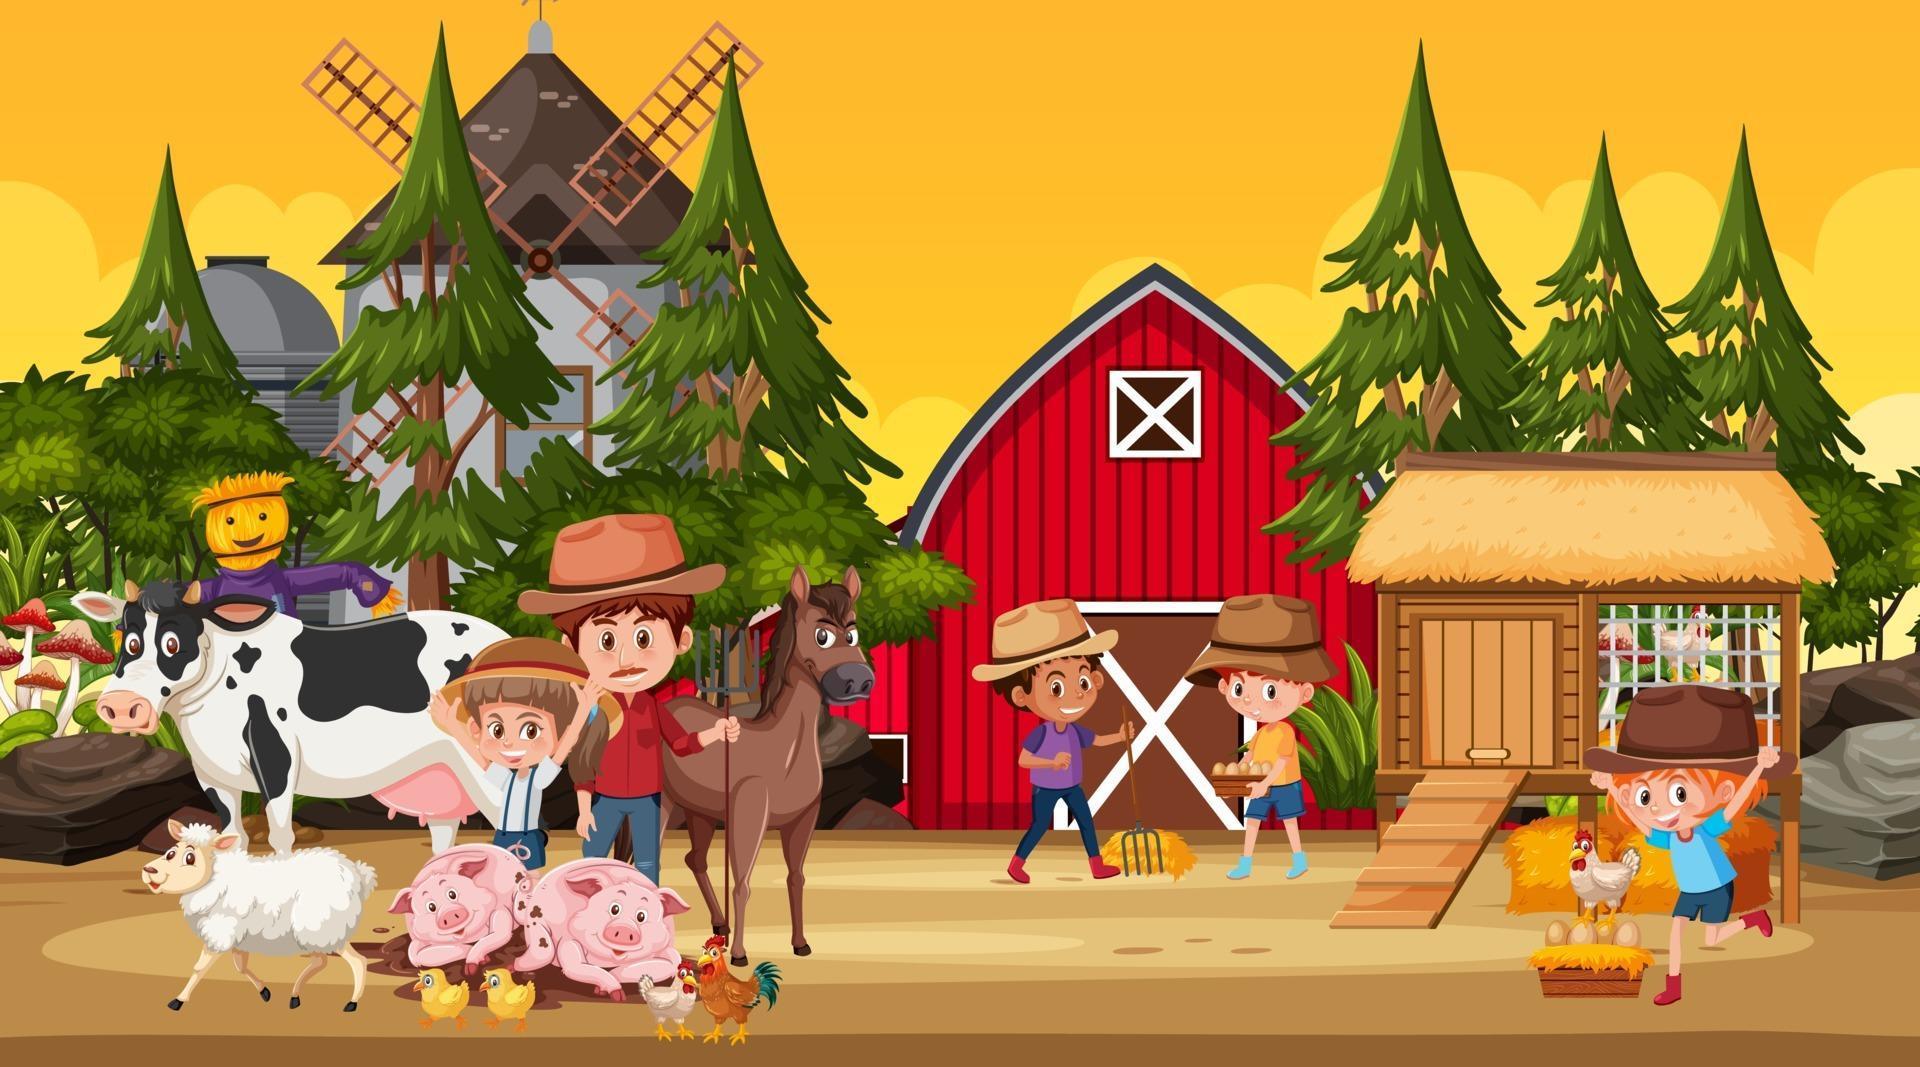 Farm Scene With Many Kids Cartoon Character And Farm Animals 2384333